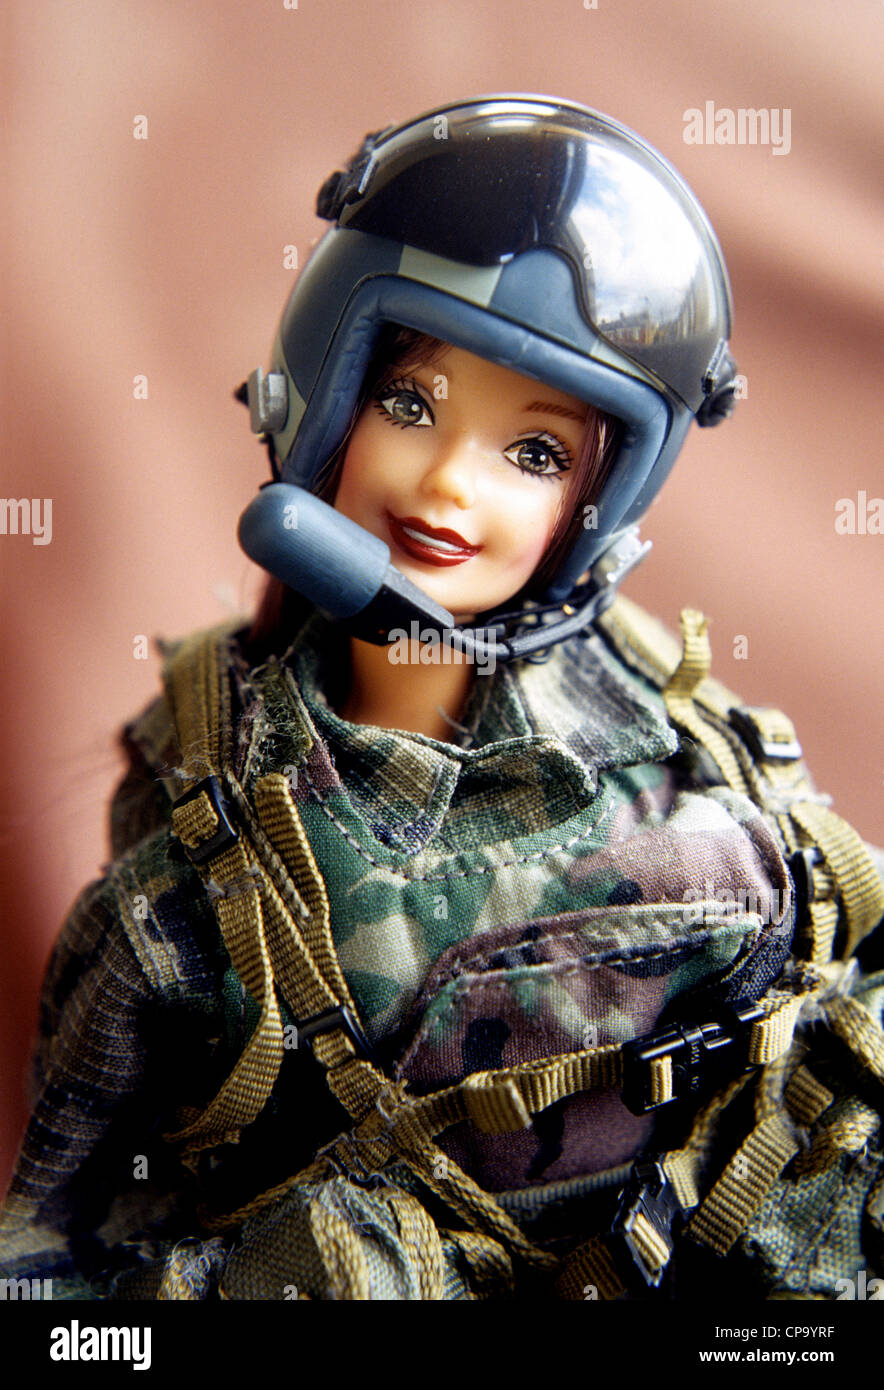 soldier-barbie-in-helmand-in-afghanistan-CP9YRF.jpg